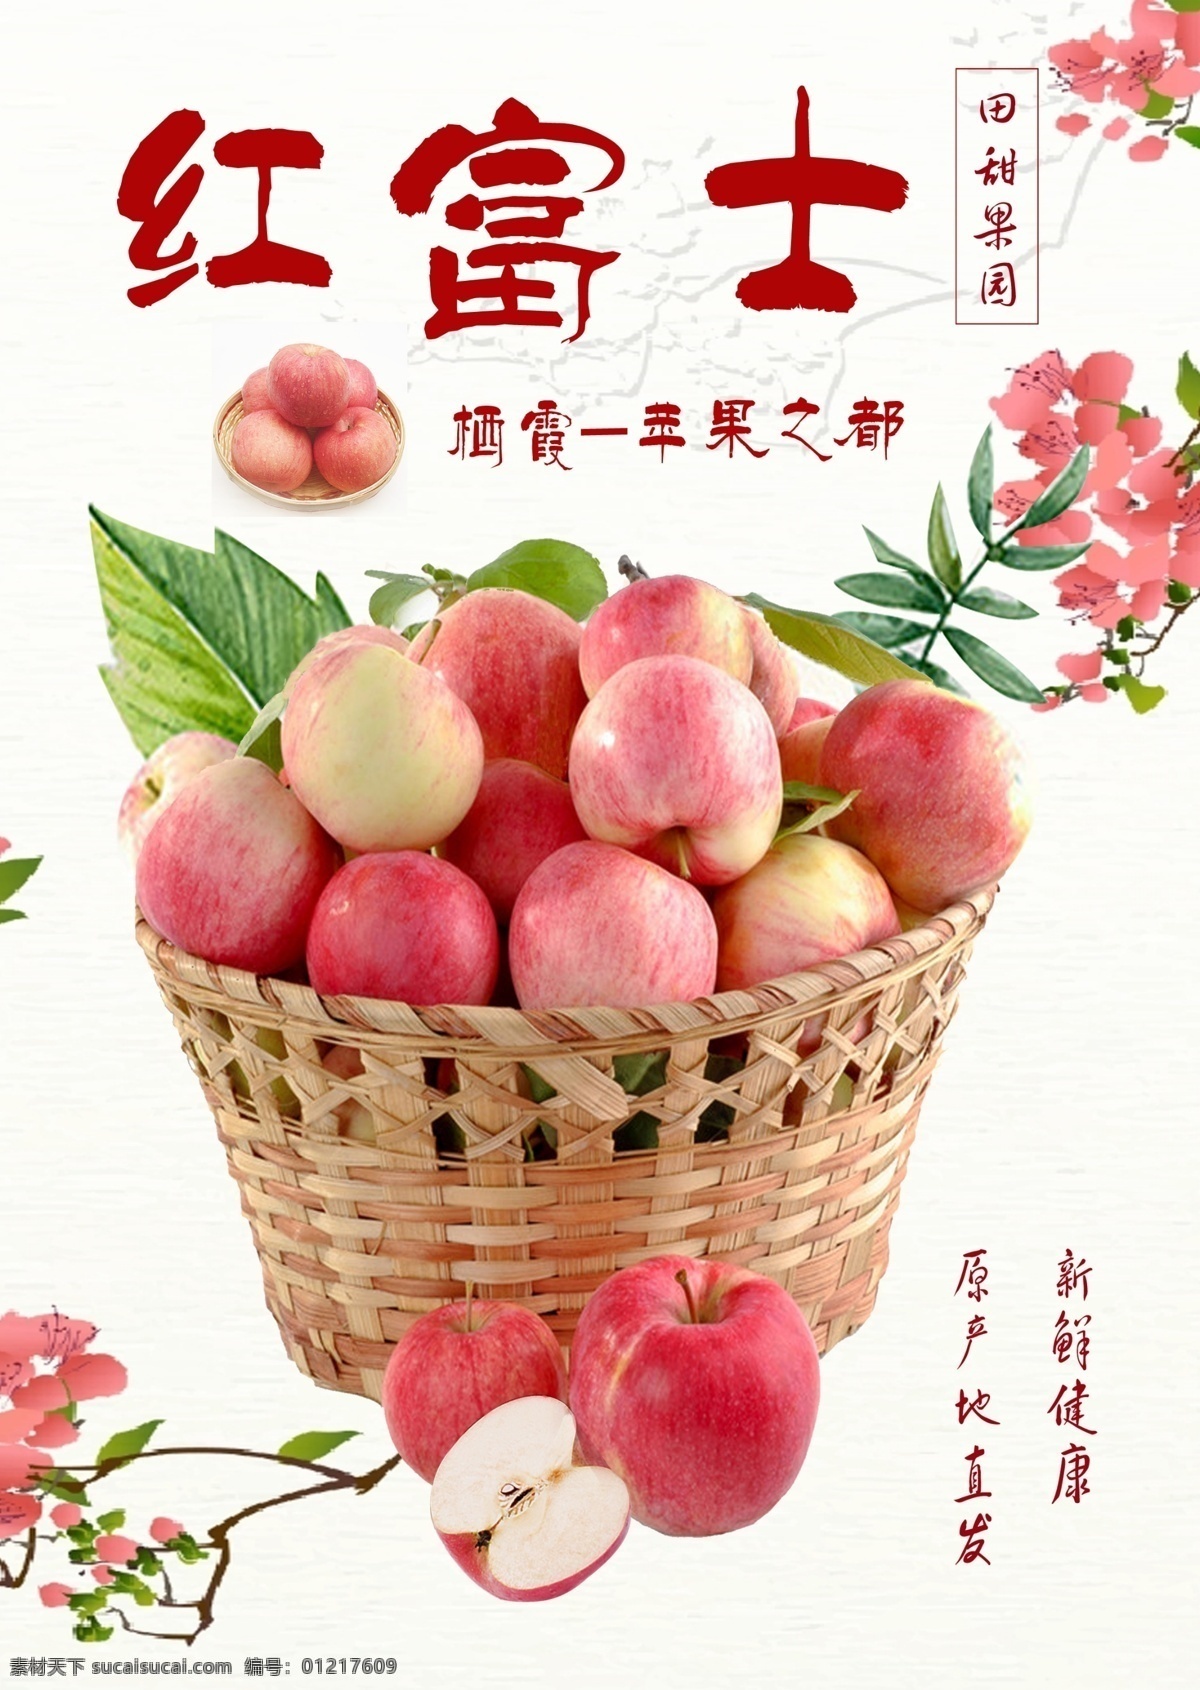 红富士苹果 花 叶子 果篮 写真